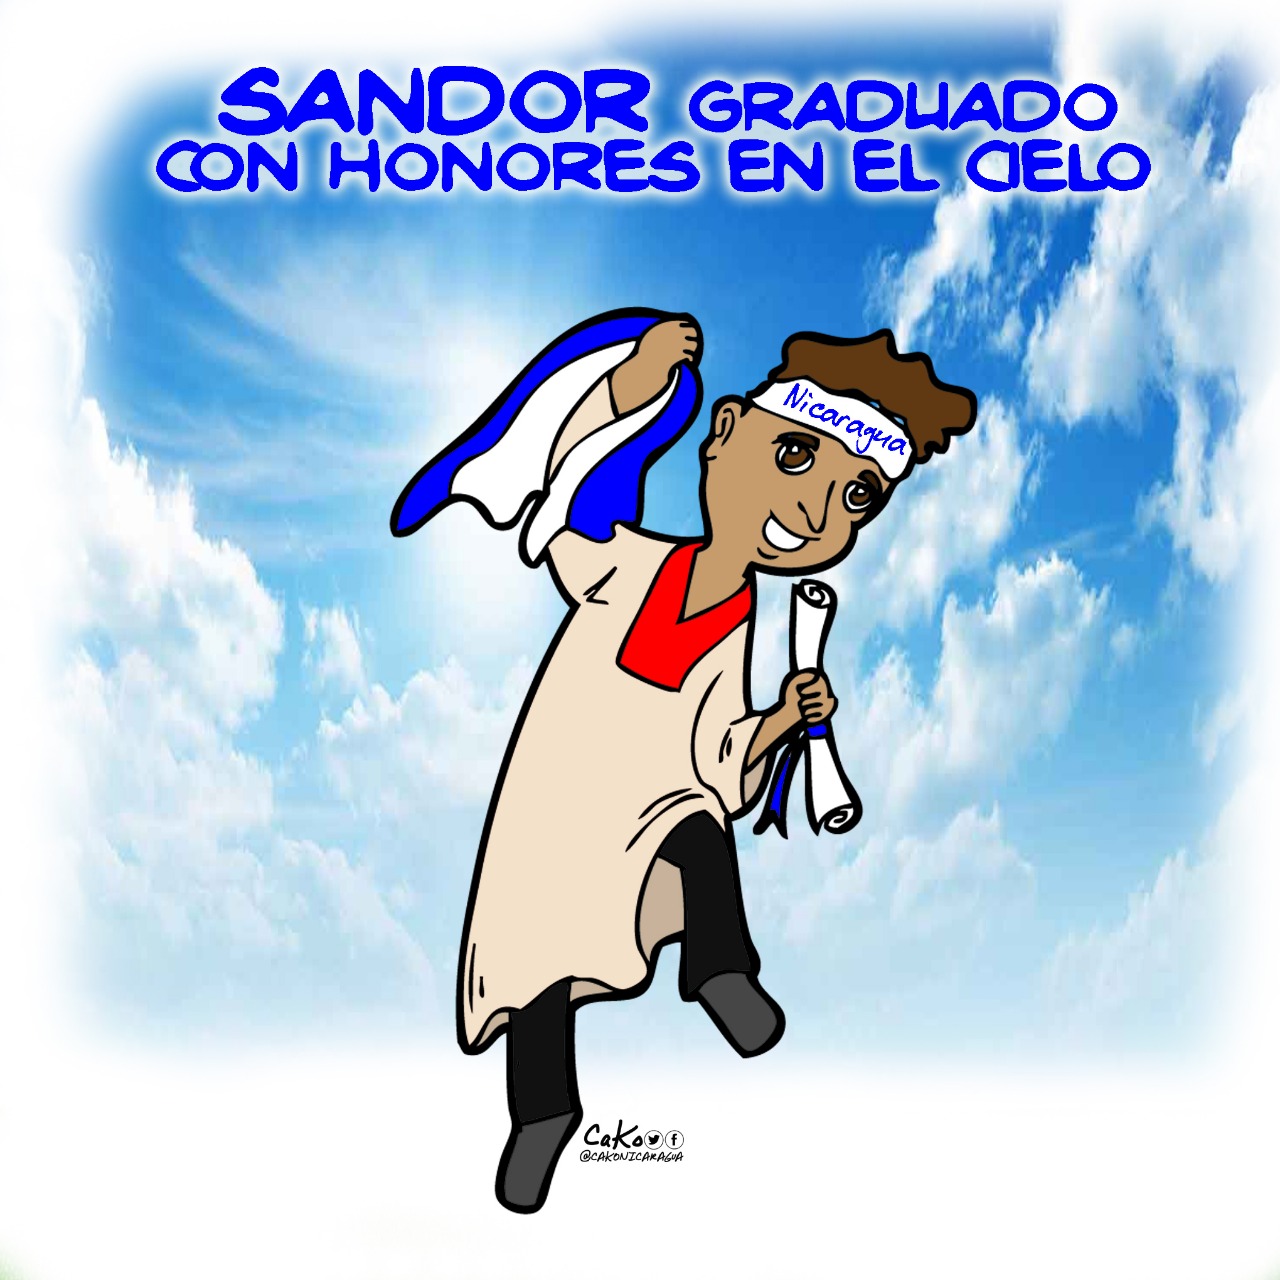 La Caricatura: "El niño monaguillo" graduado con honores